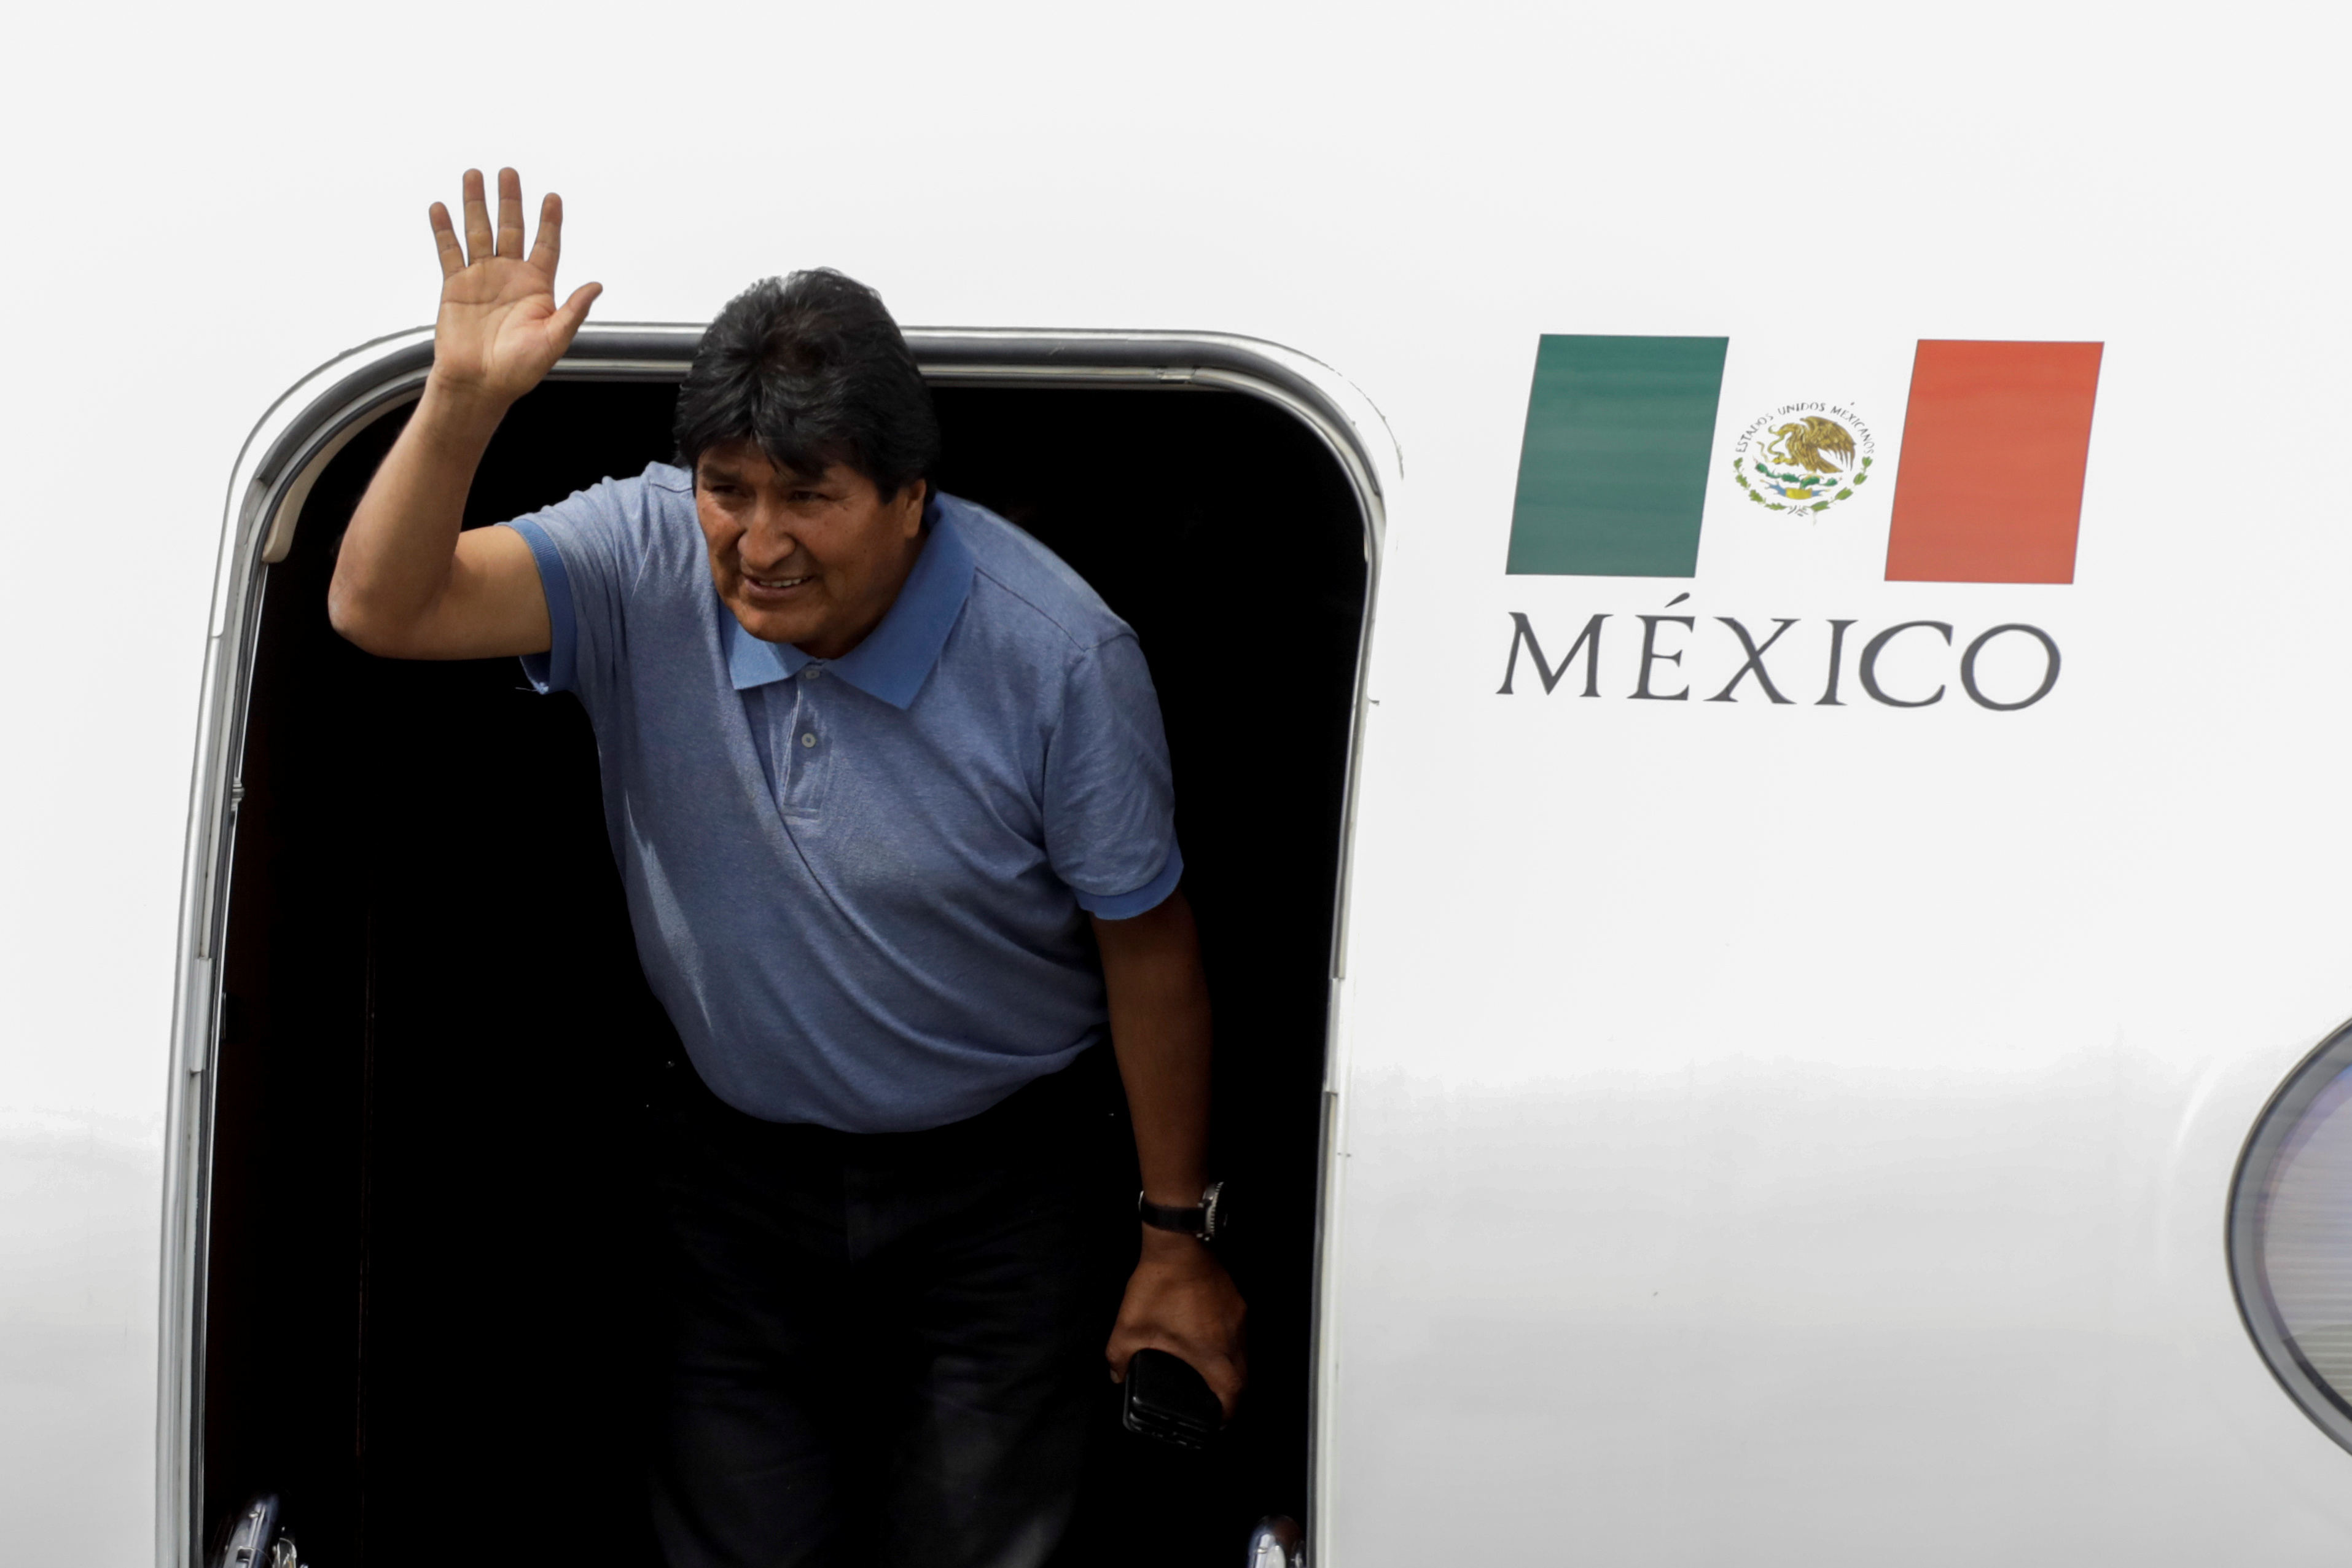 Έφτασε στο Μεξικό ο Μοράλες! Άγνωστος θα παραμείνει ο τόπος κατοικίας του